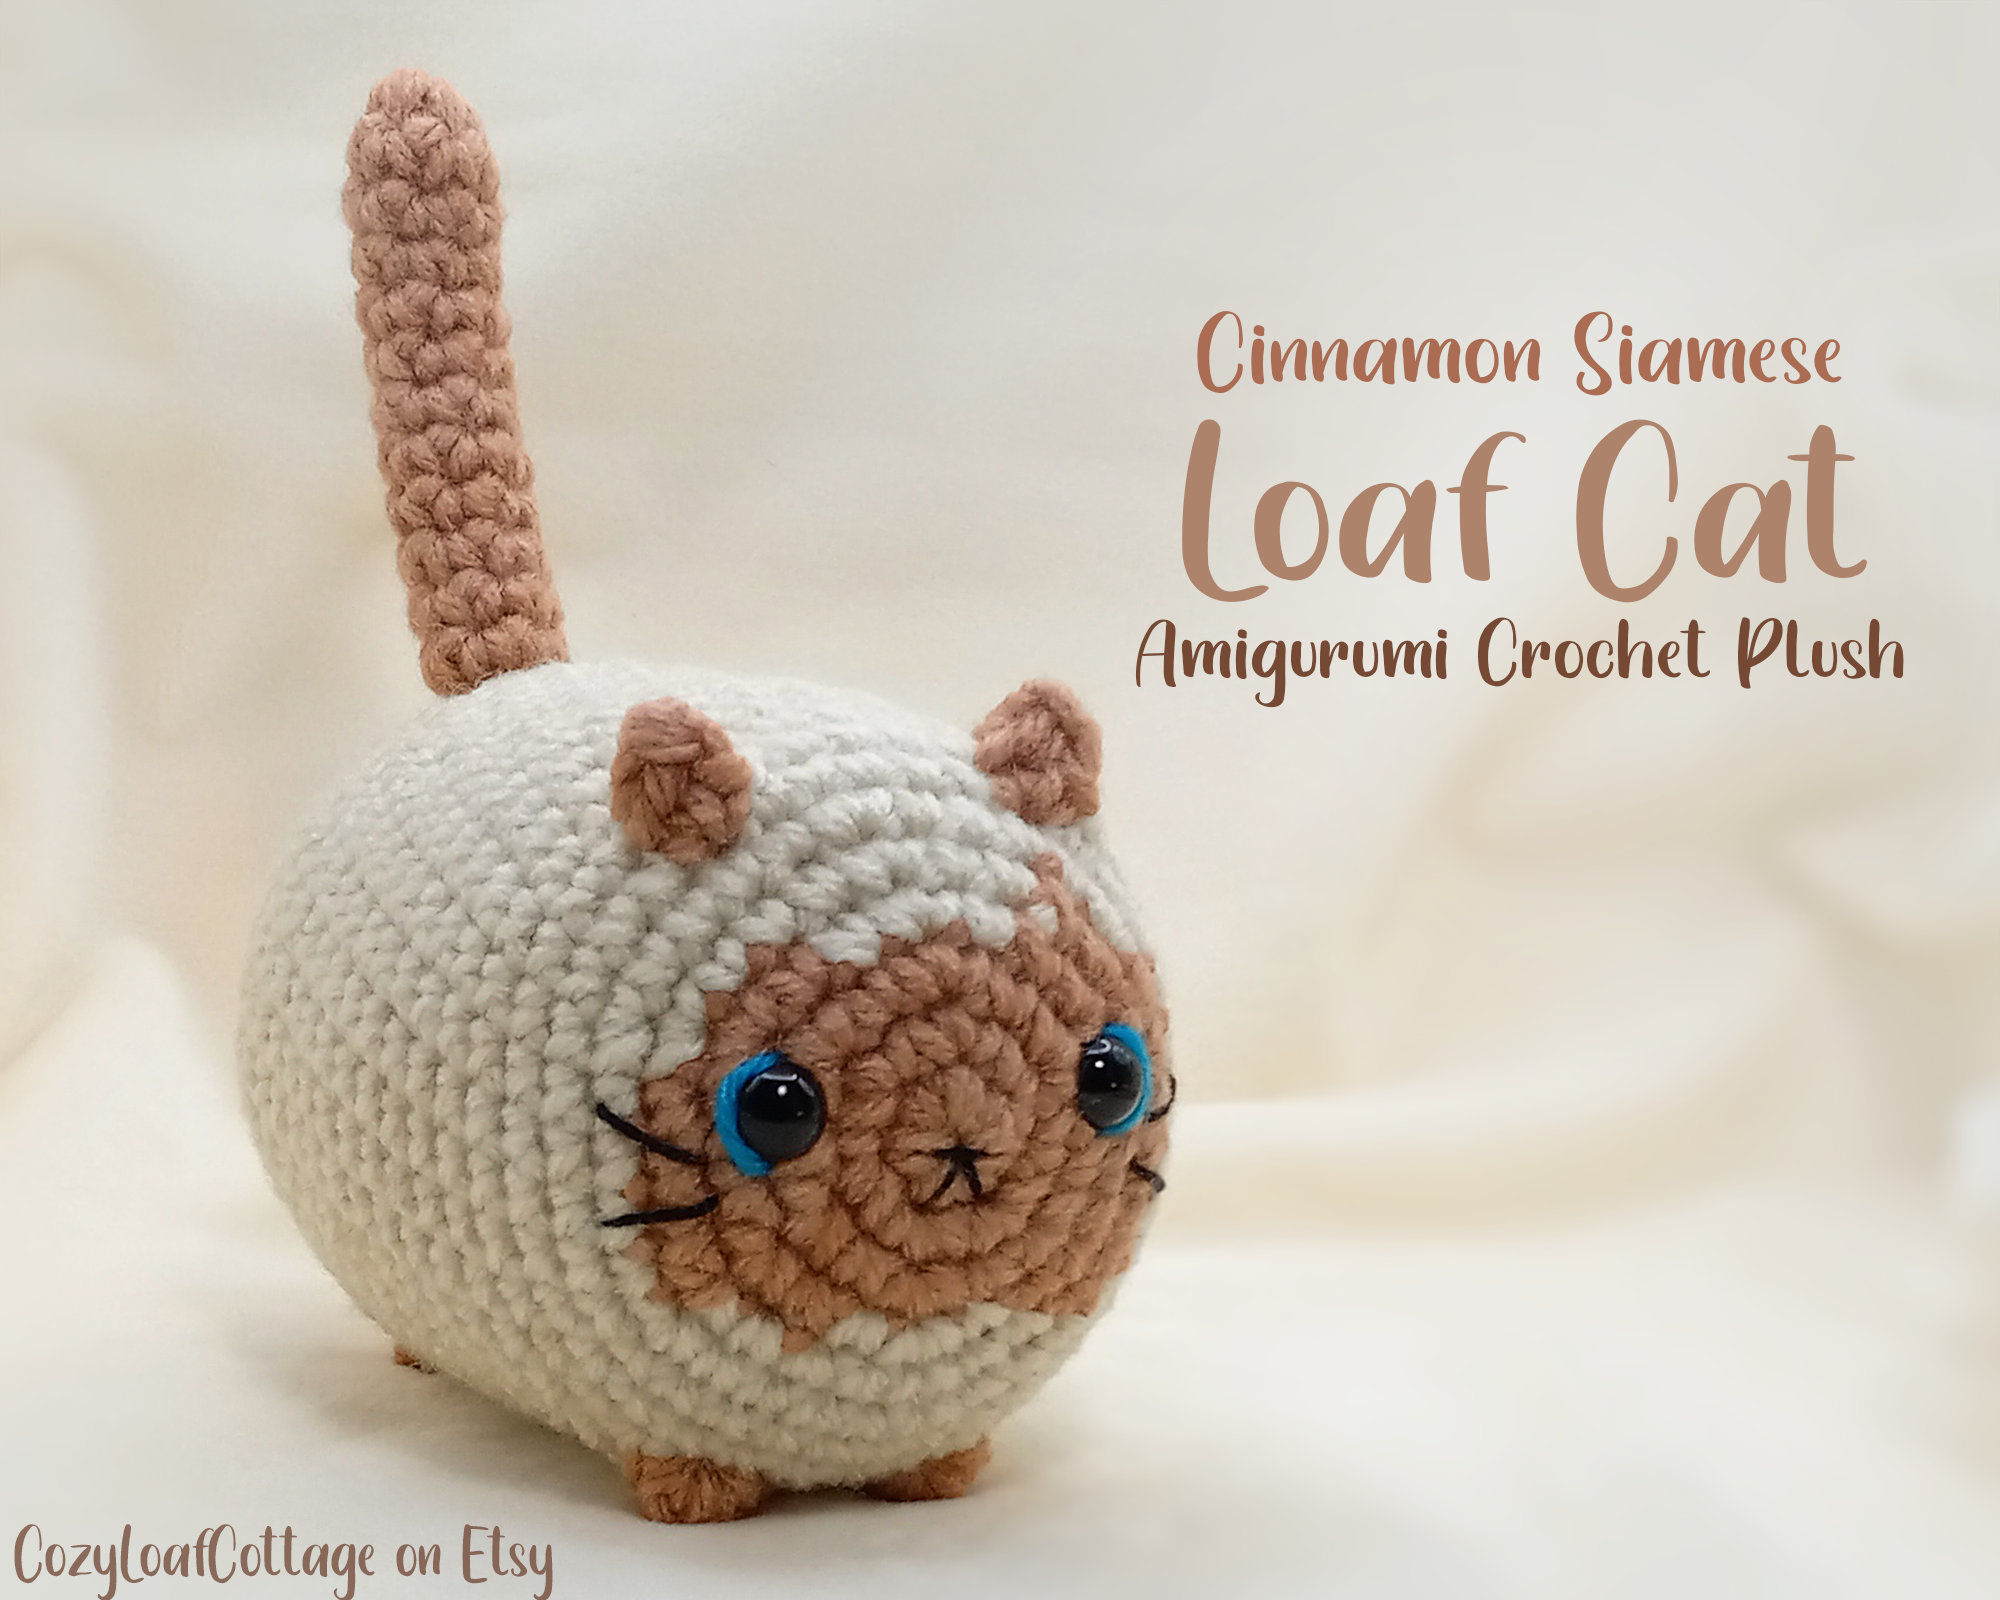 Grey & White Siamese Kitty - Hand Crochet Plush - GiftyKitty